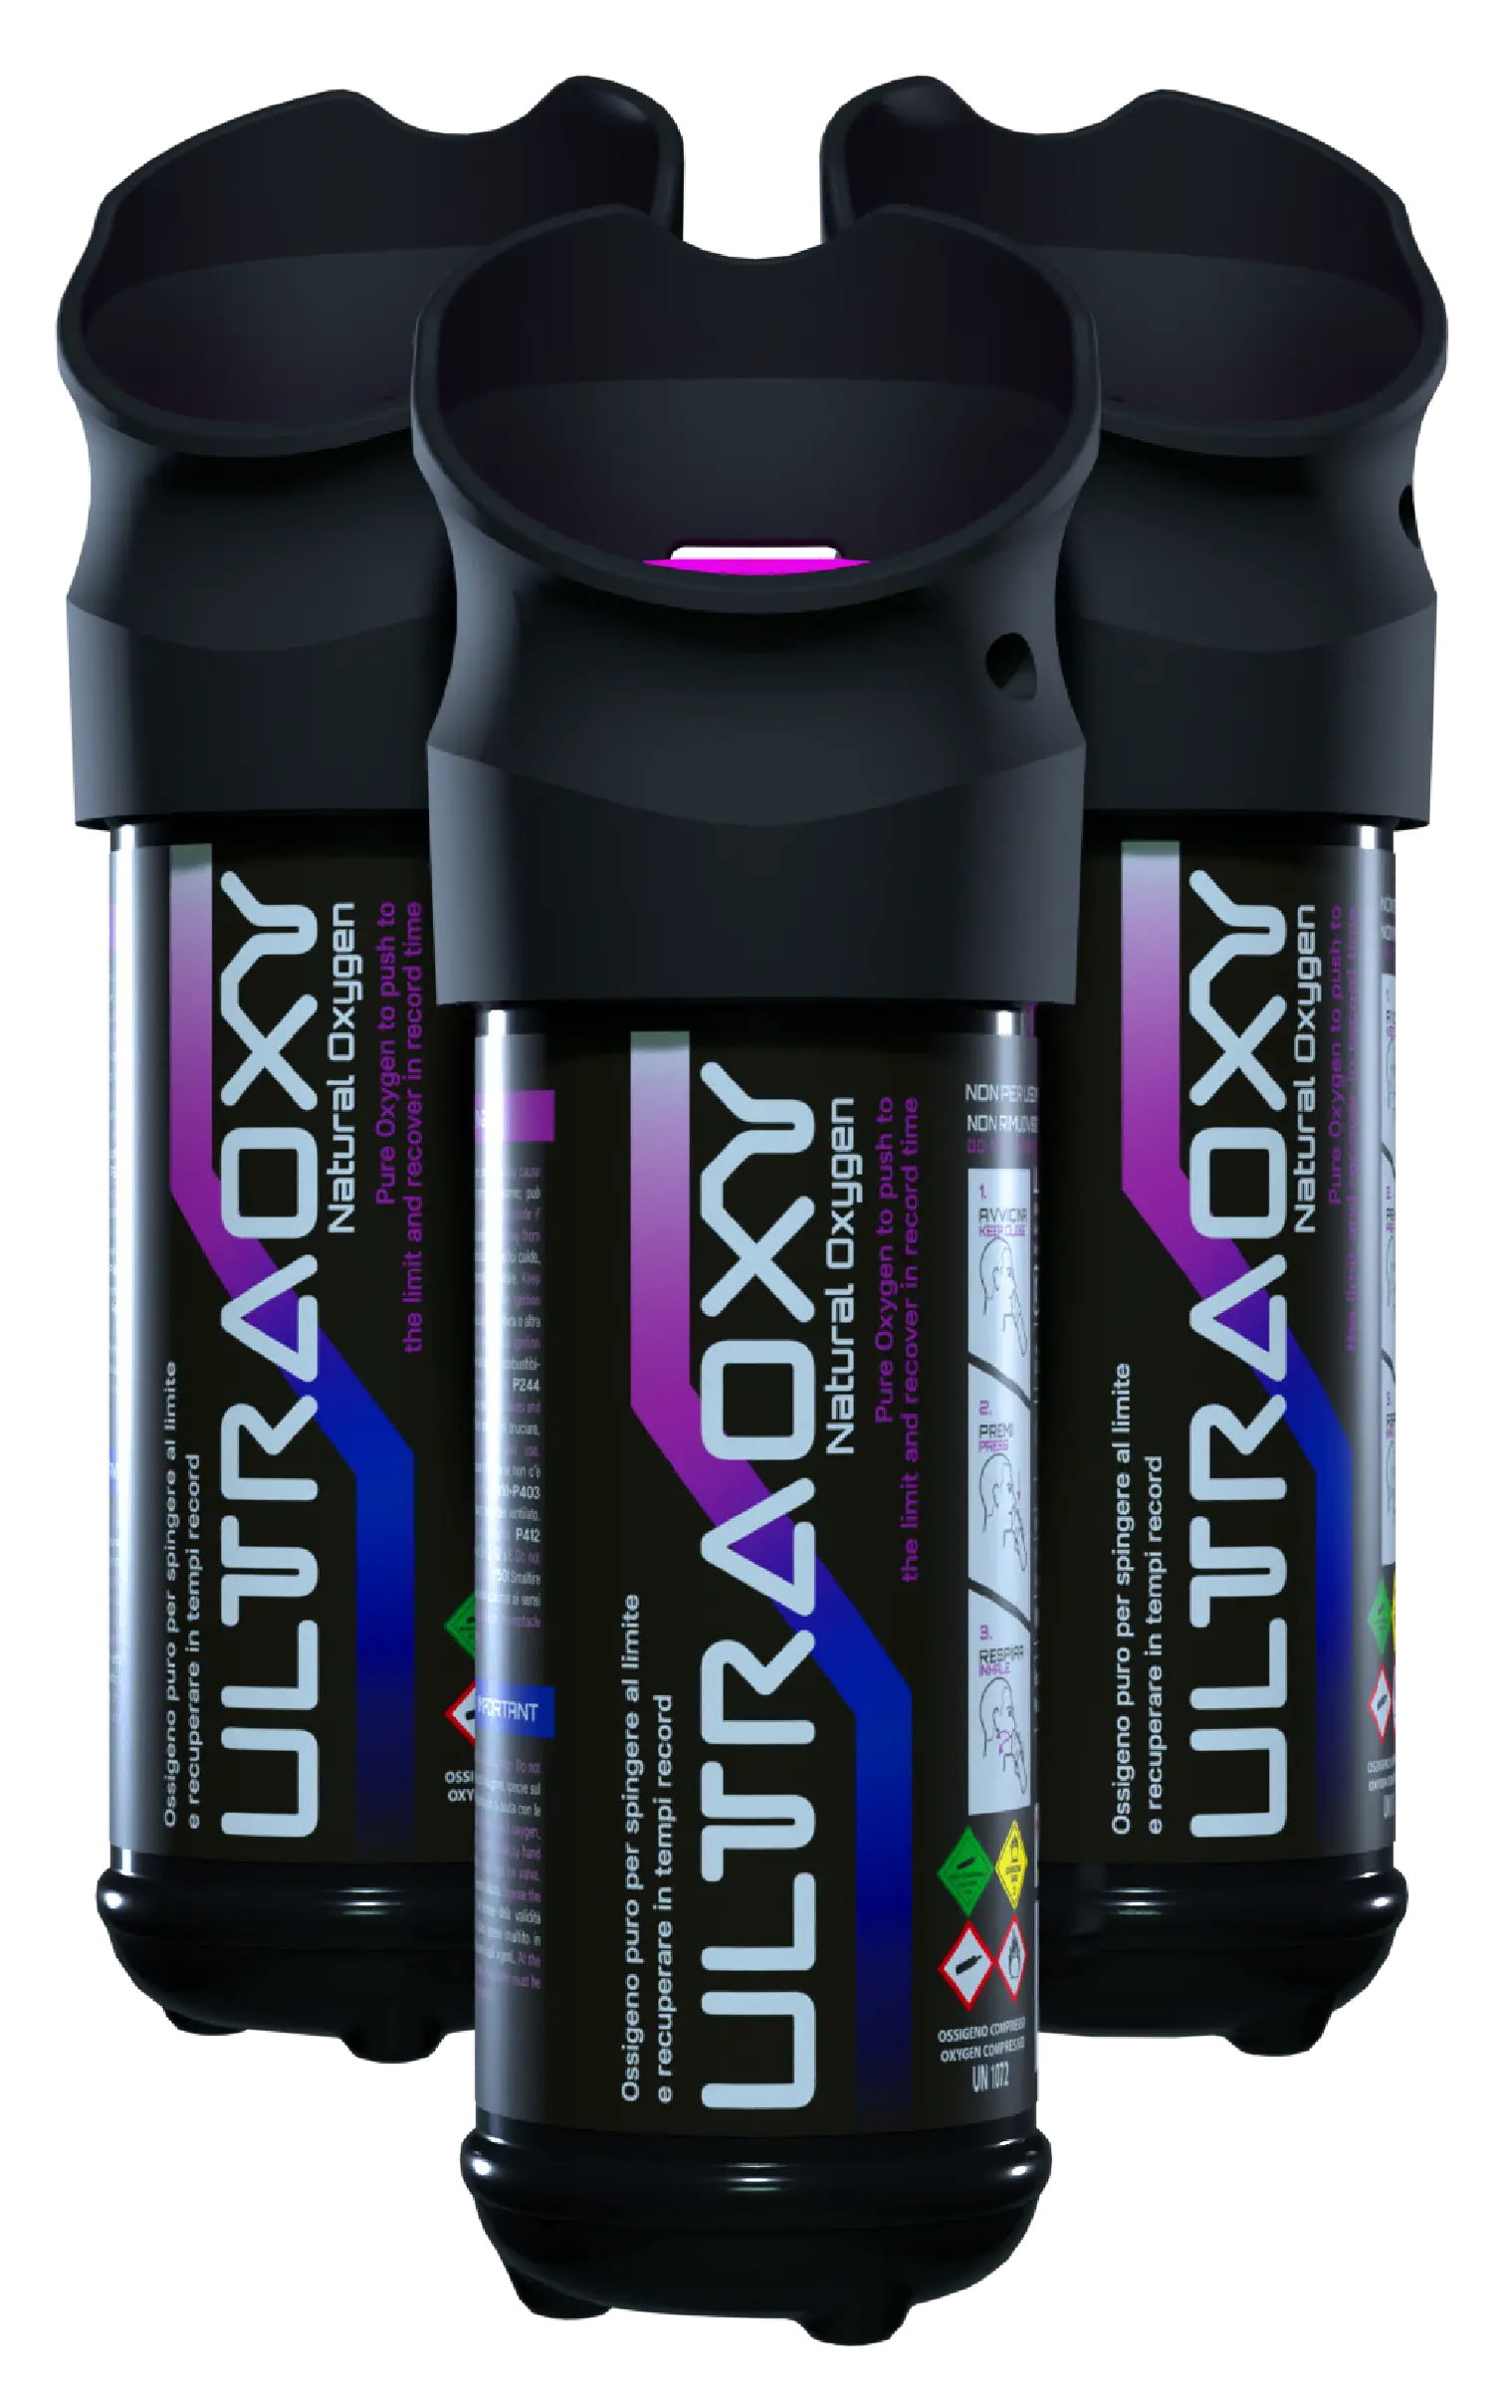 UltraOxy tragbarer Sauerstoffbehälter für den Sport